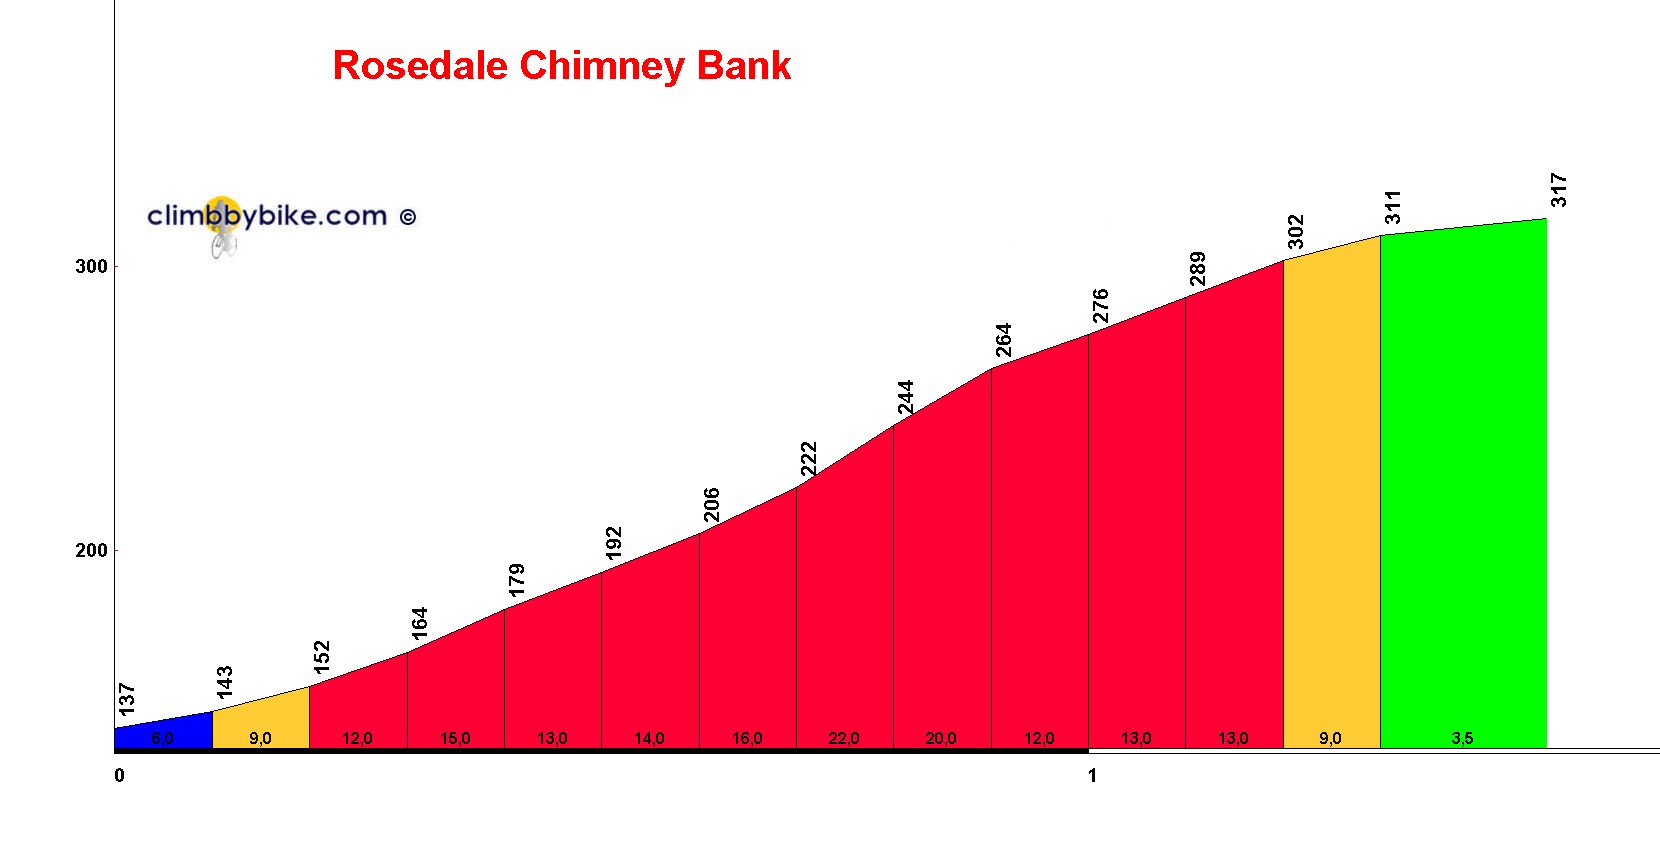 Rosedale_Chimney_Bank_profile.jpg